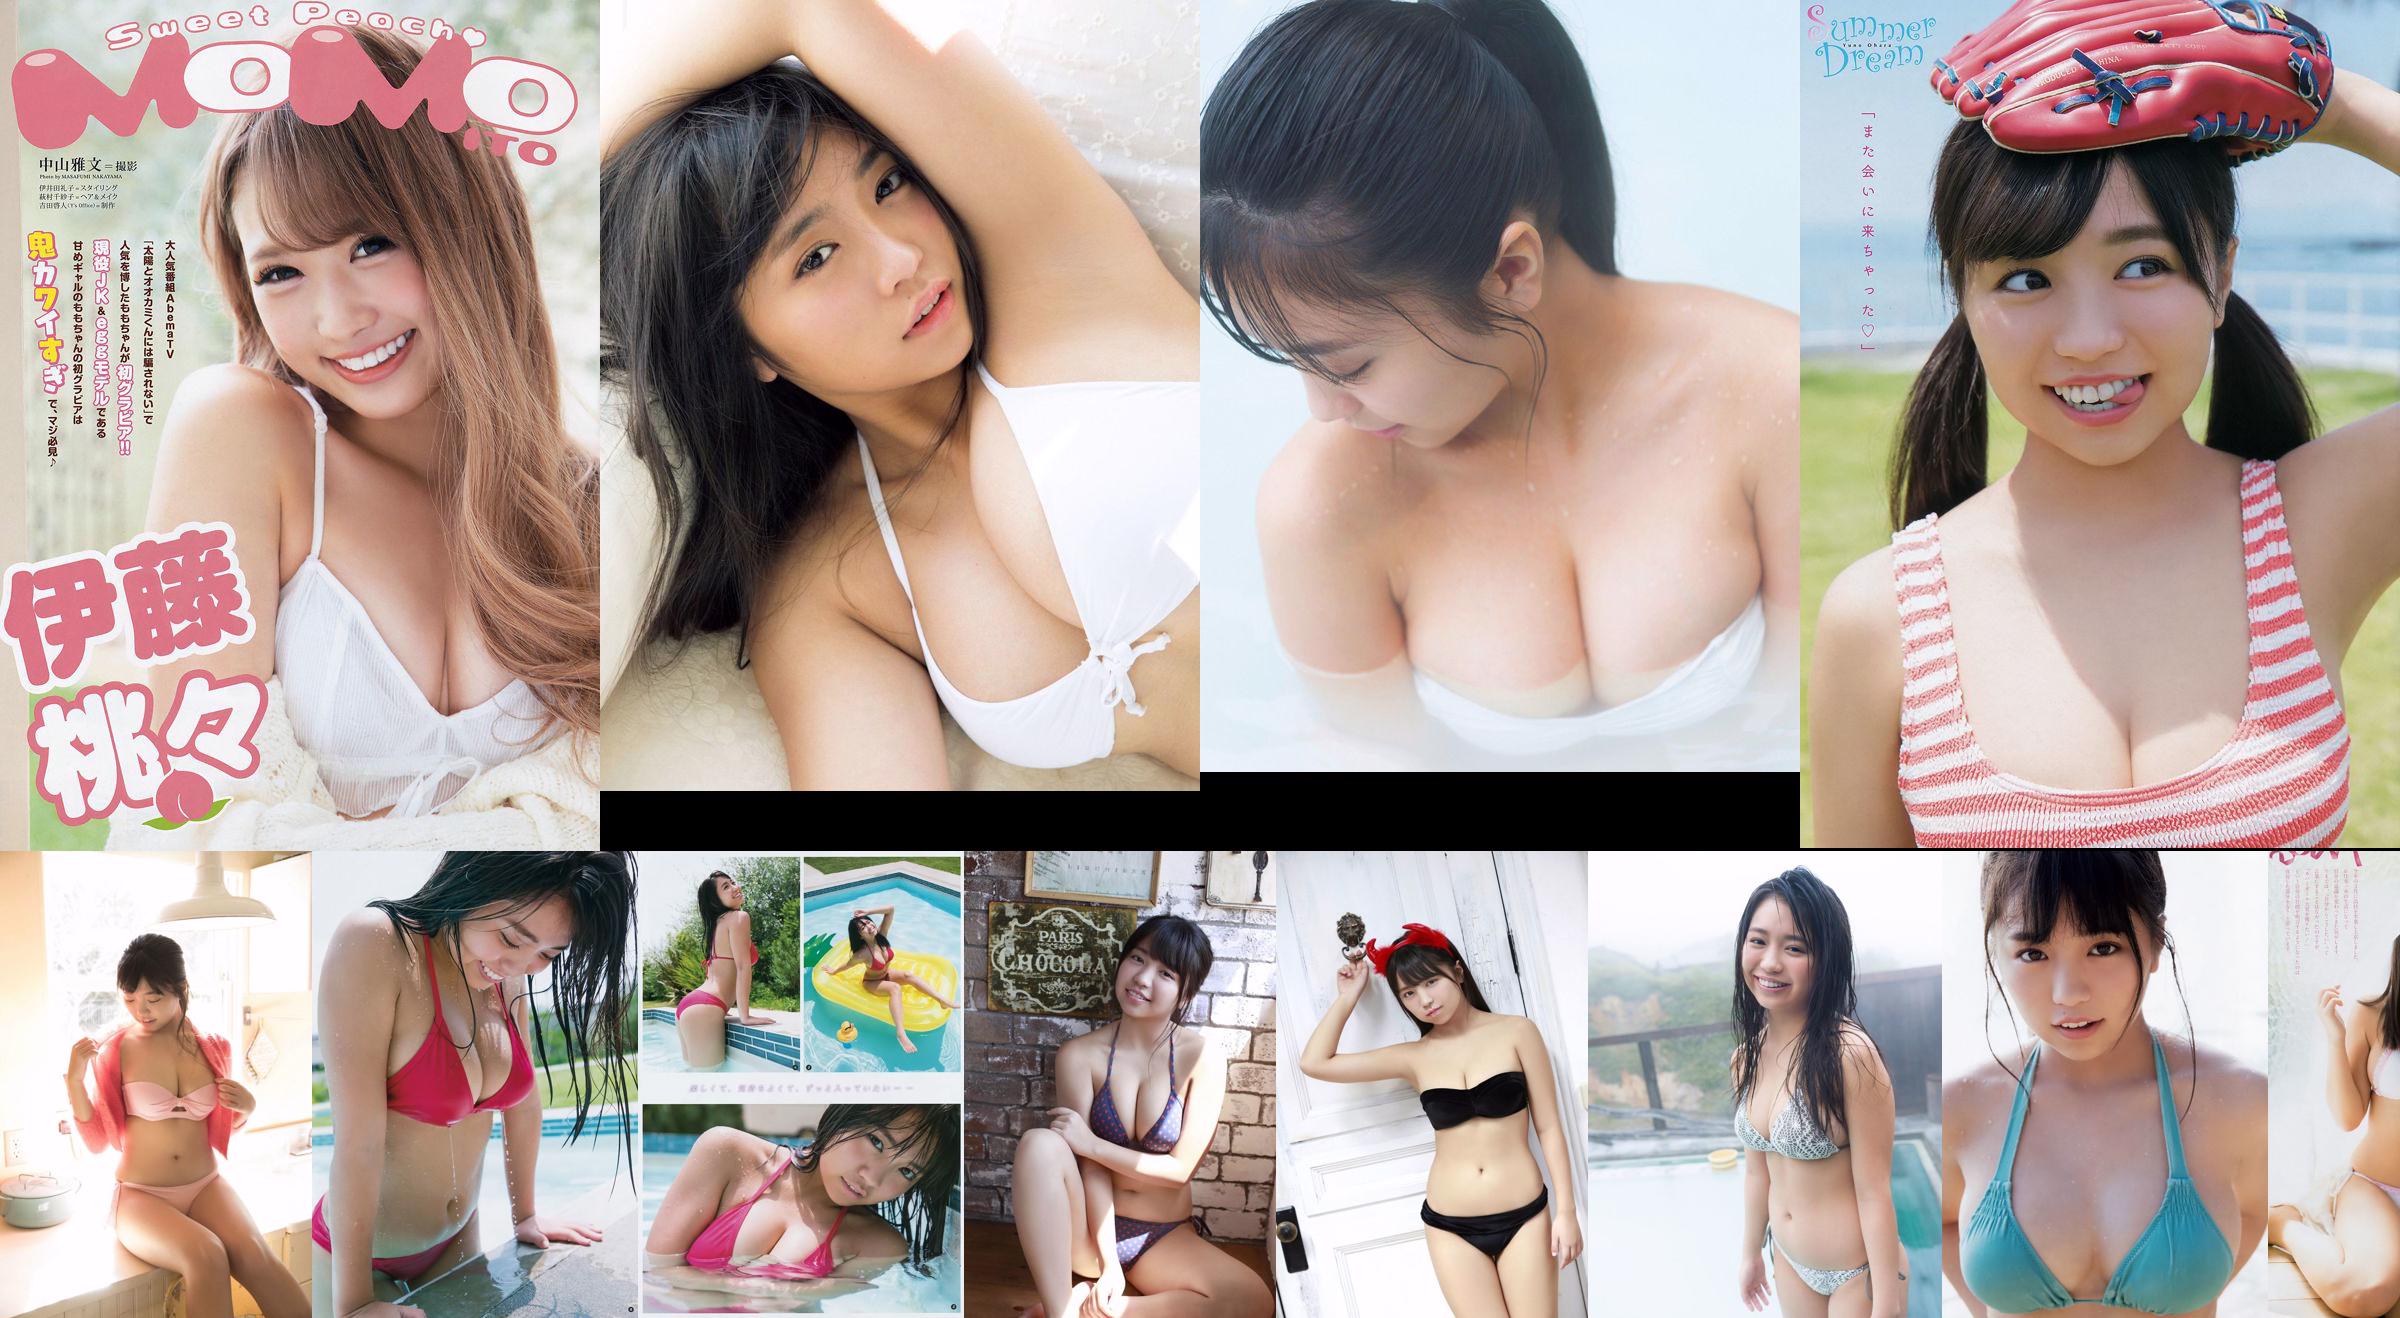 Yuno Ohara Miona Hori Nana Kato Miki Sato [Playboy Semanal] 2017 No.49 Foto Mori No.52561e Página 2